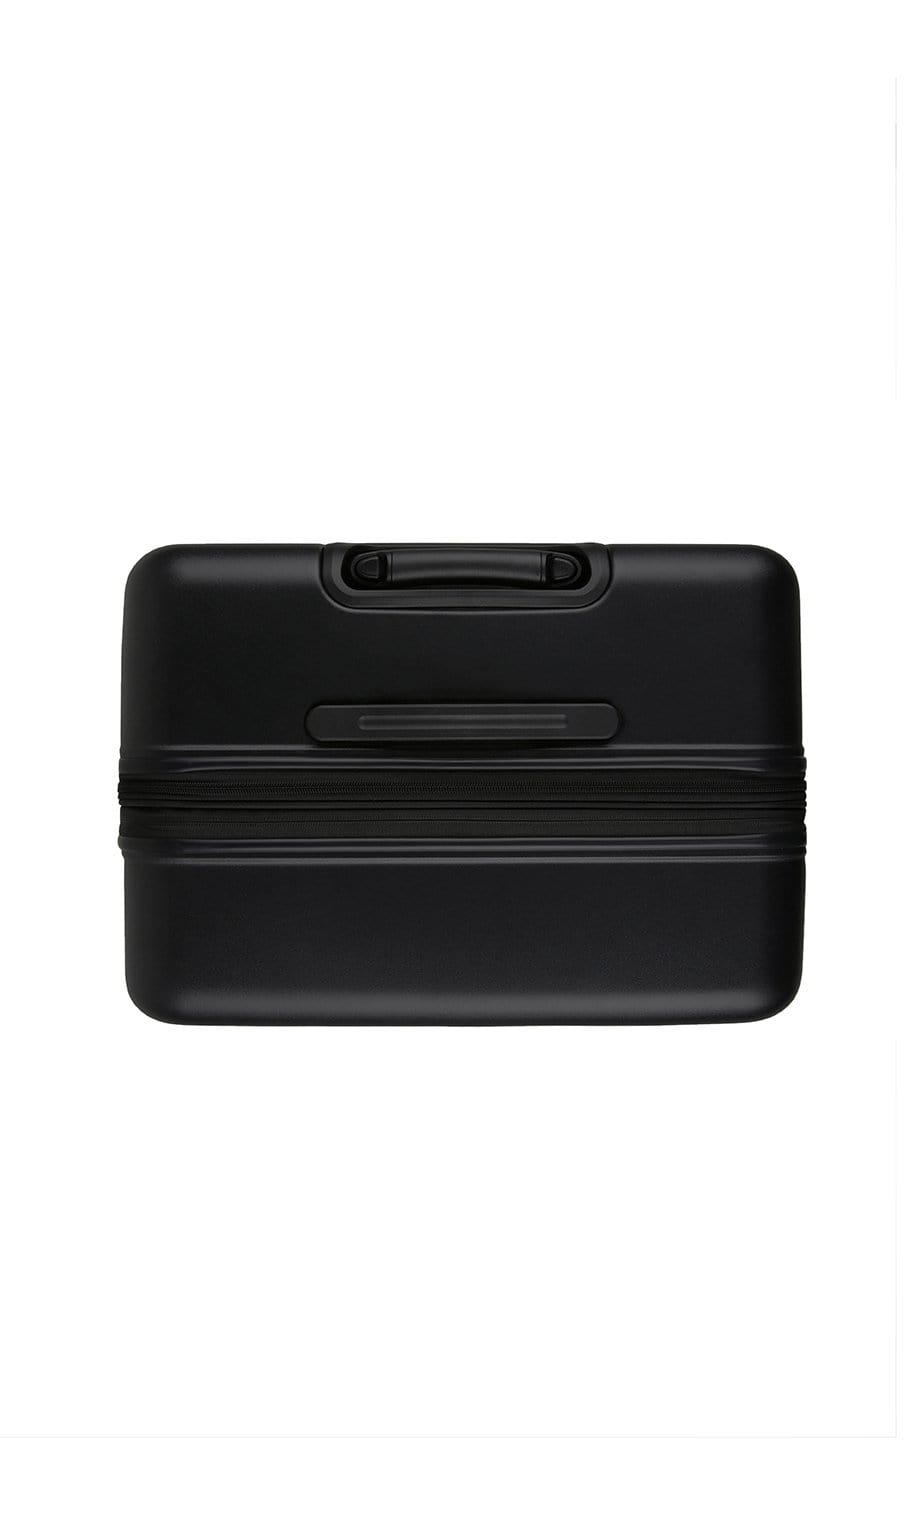 Antler Luggage -  Clifton large in black - Hard Suitcases Clifton Large Suitcase Black | Hard Suitcase | Antler UK